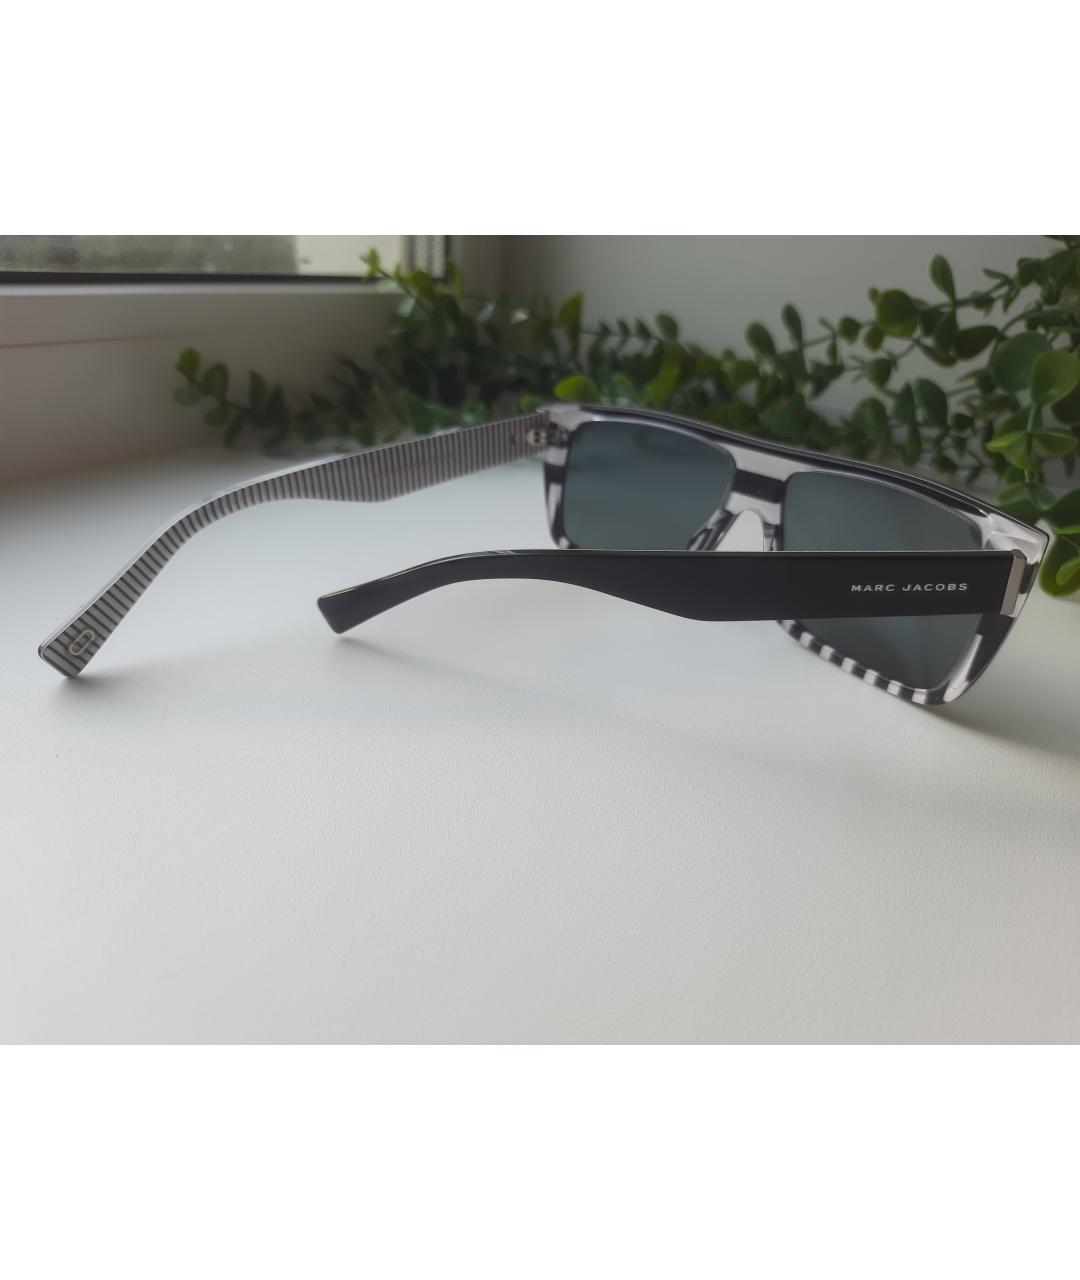 MARC JACOBS Черные пластиковые солнцезащитные очки, фото 2